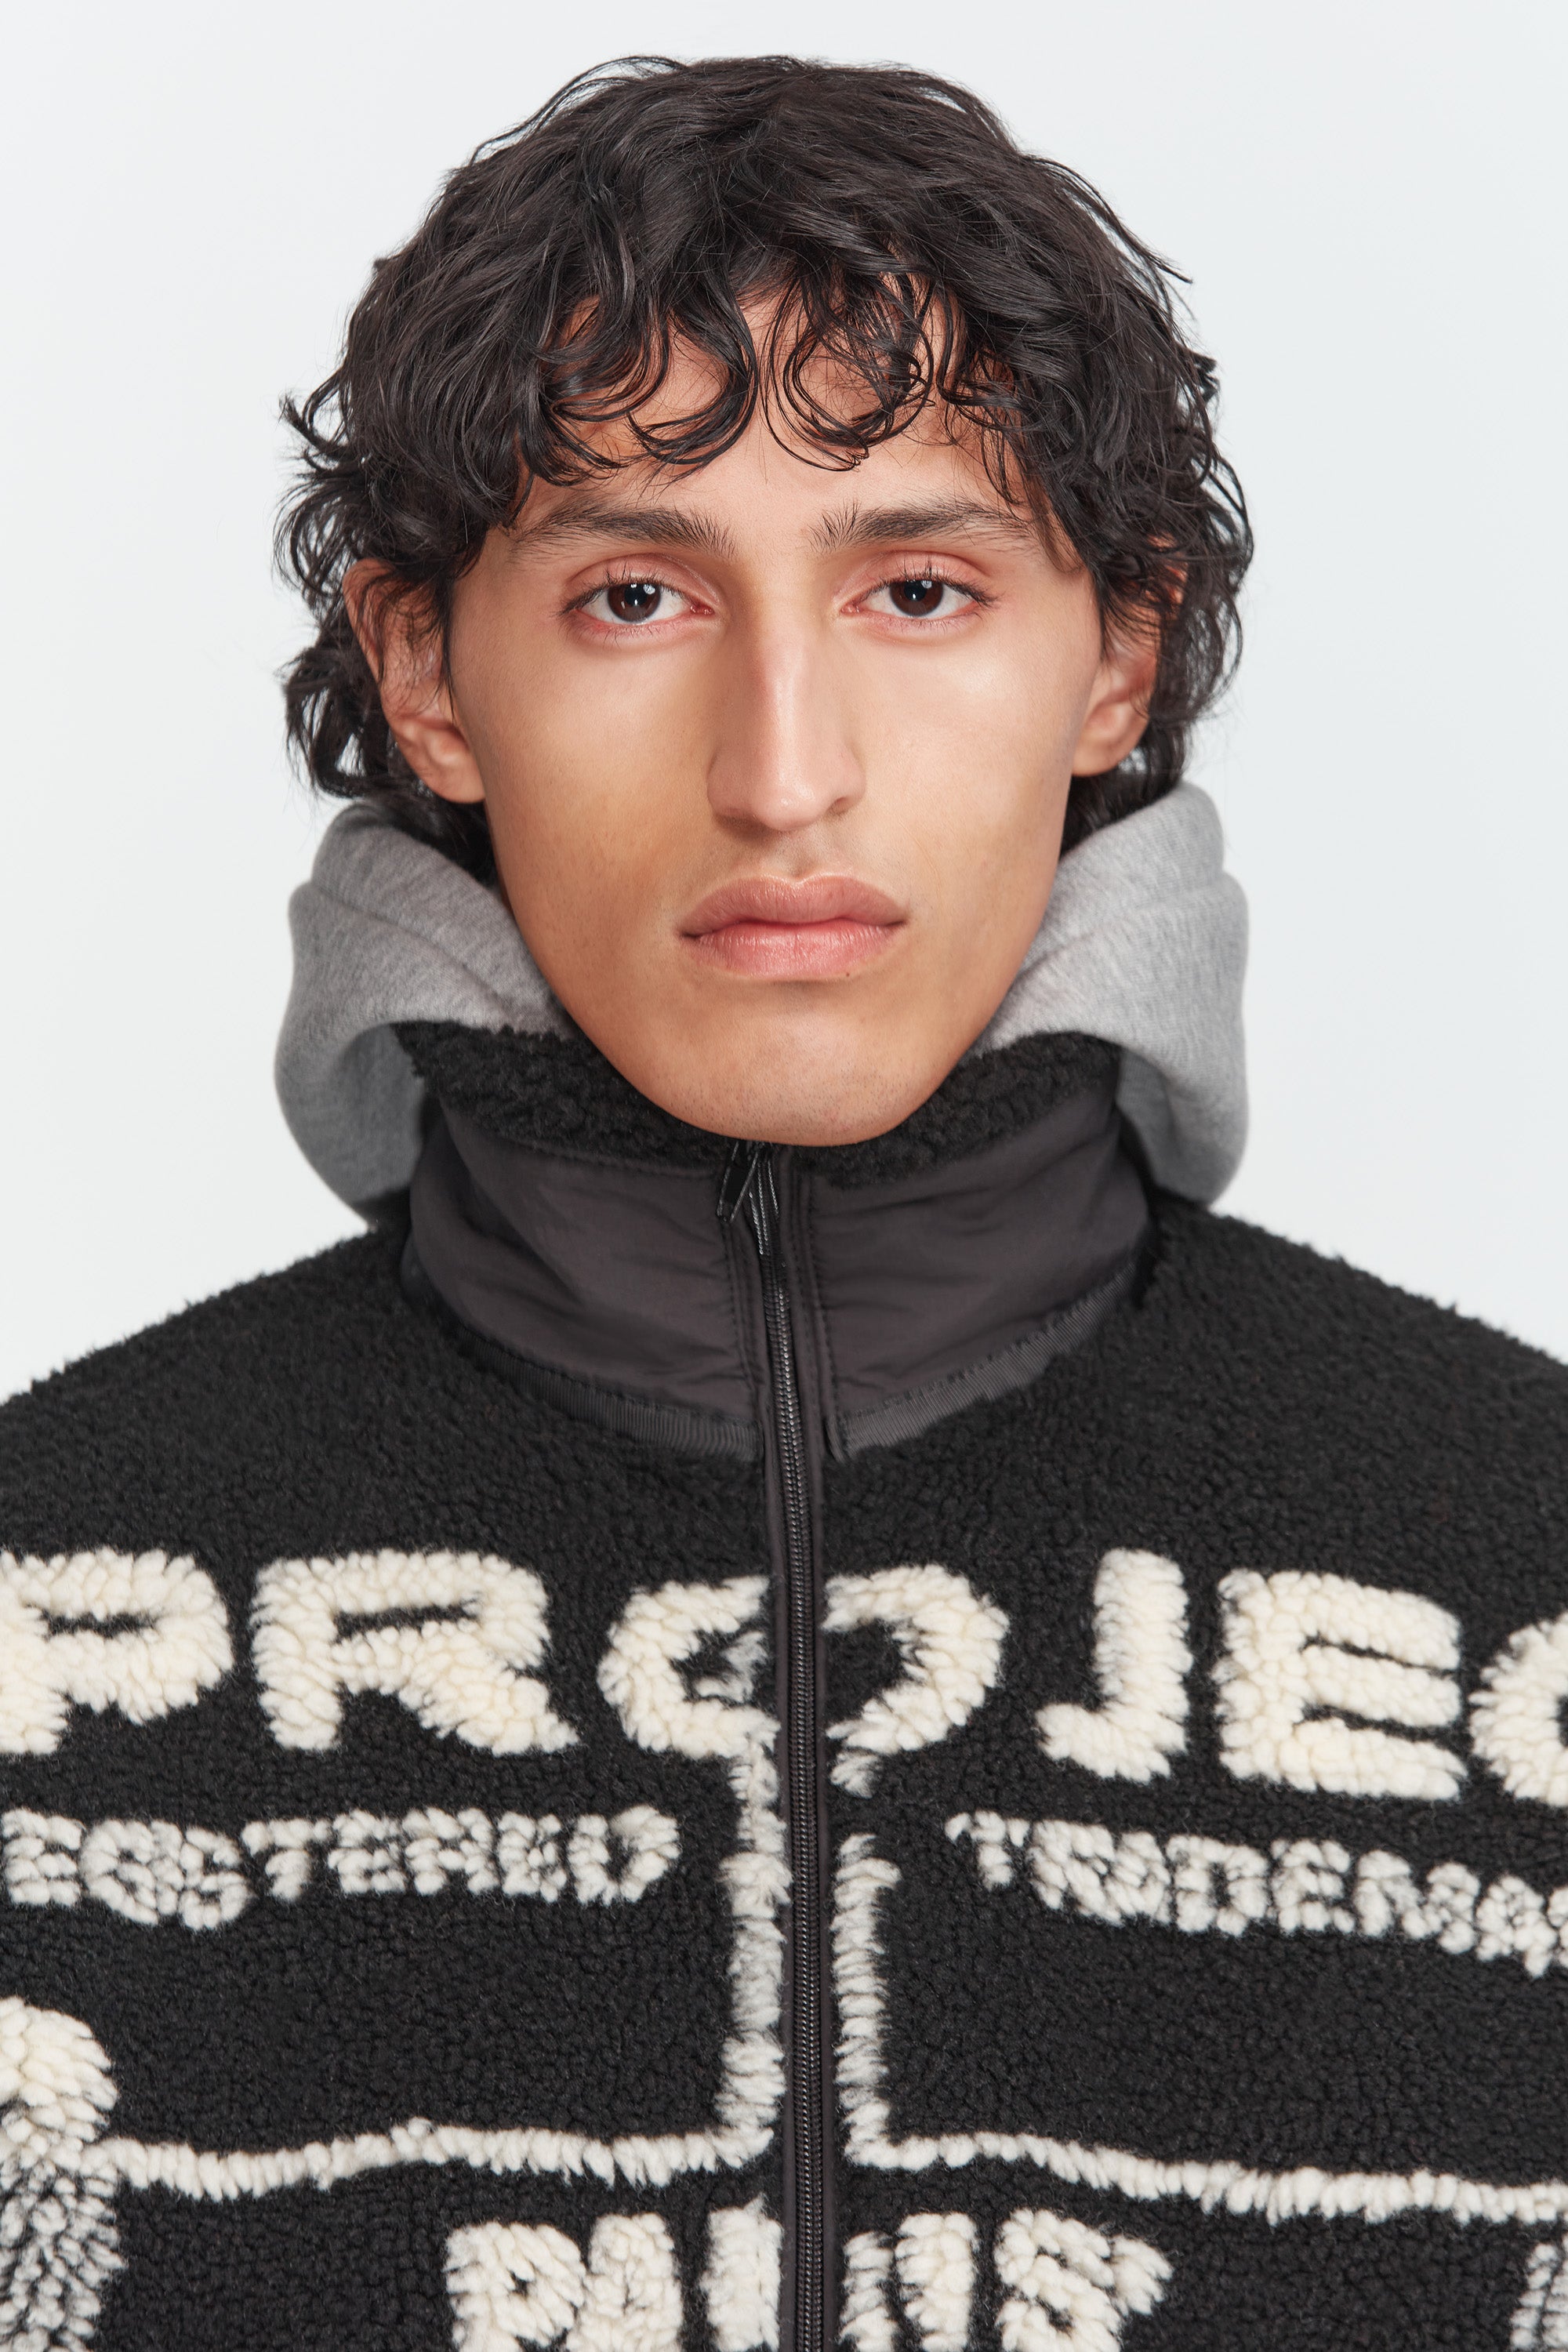 Y/Project Paris Best Jacquard Fleece Jacket